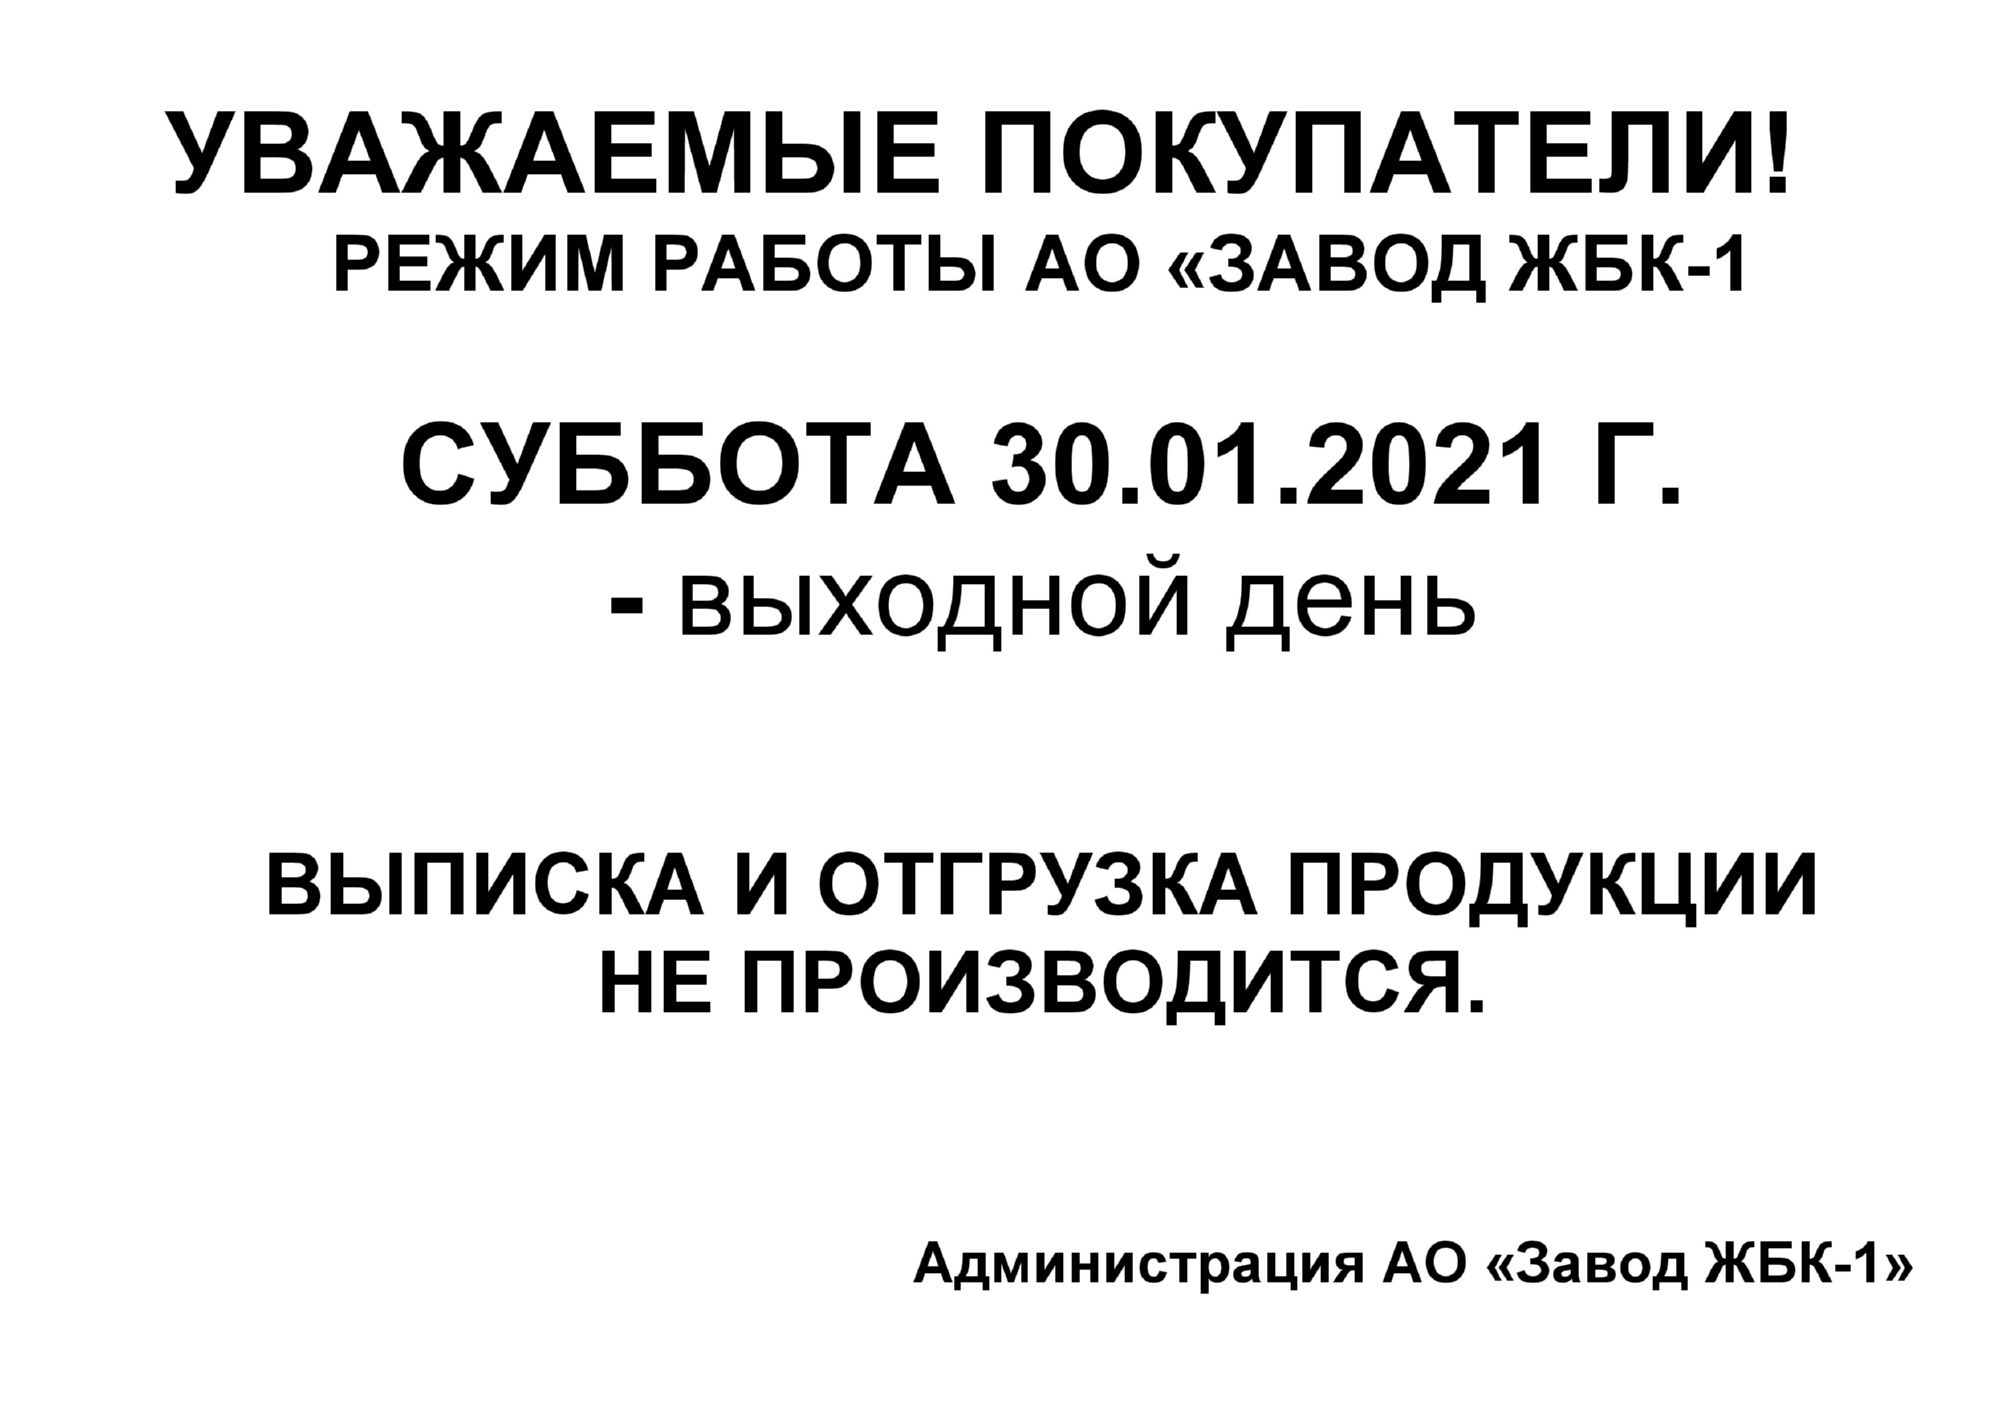 Режим работы АО "Завод ЖБК - 1" на 30.01.2021